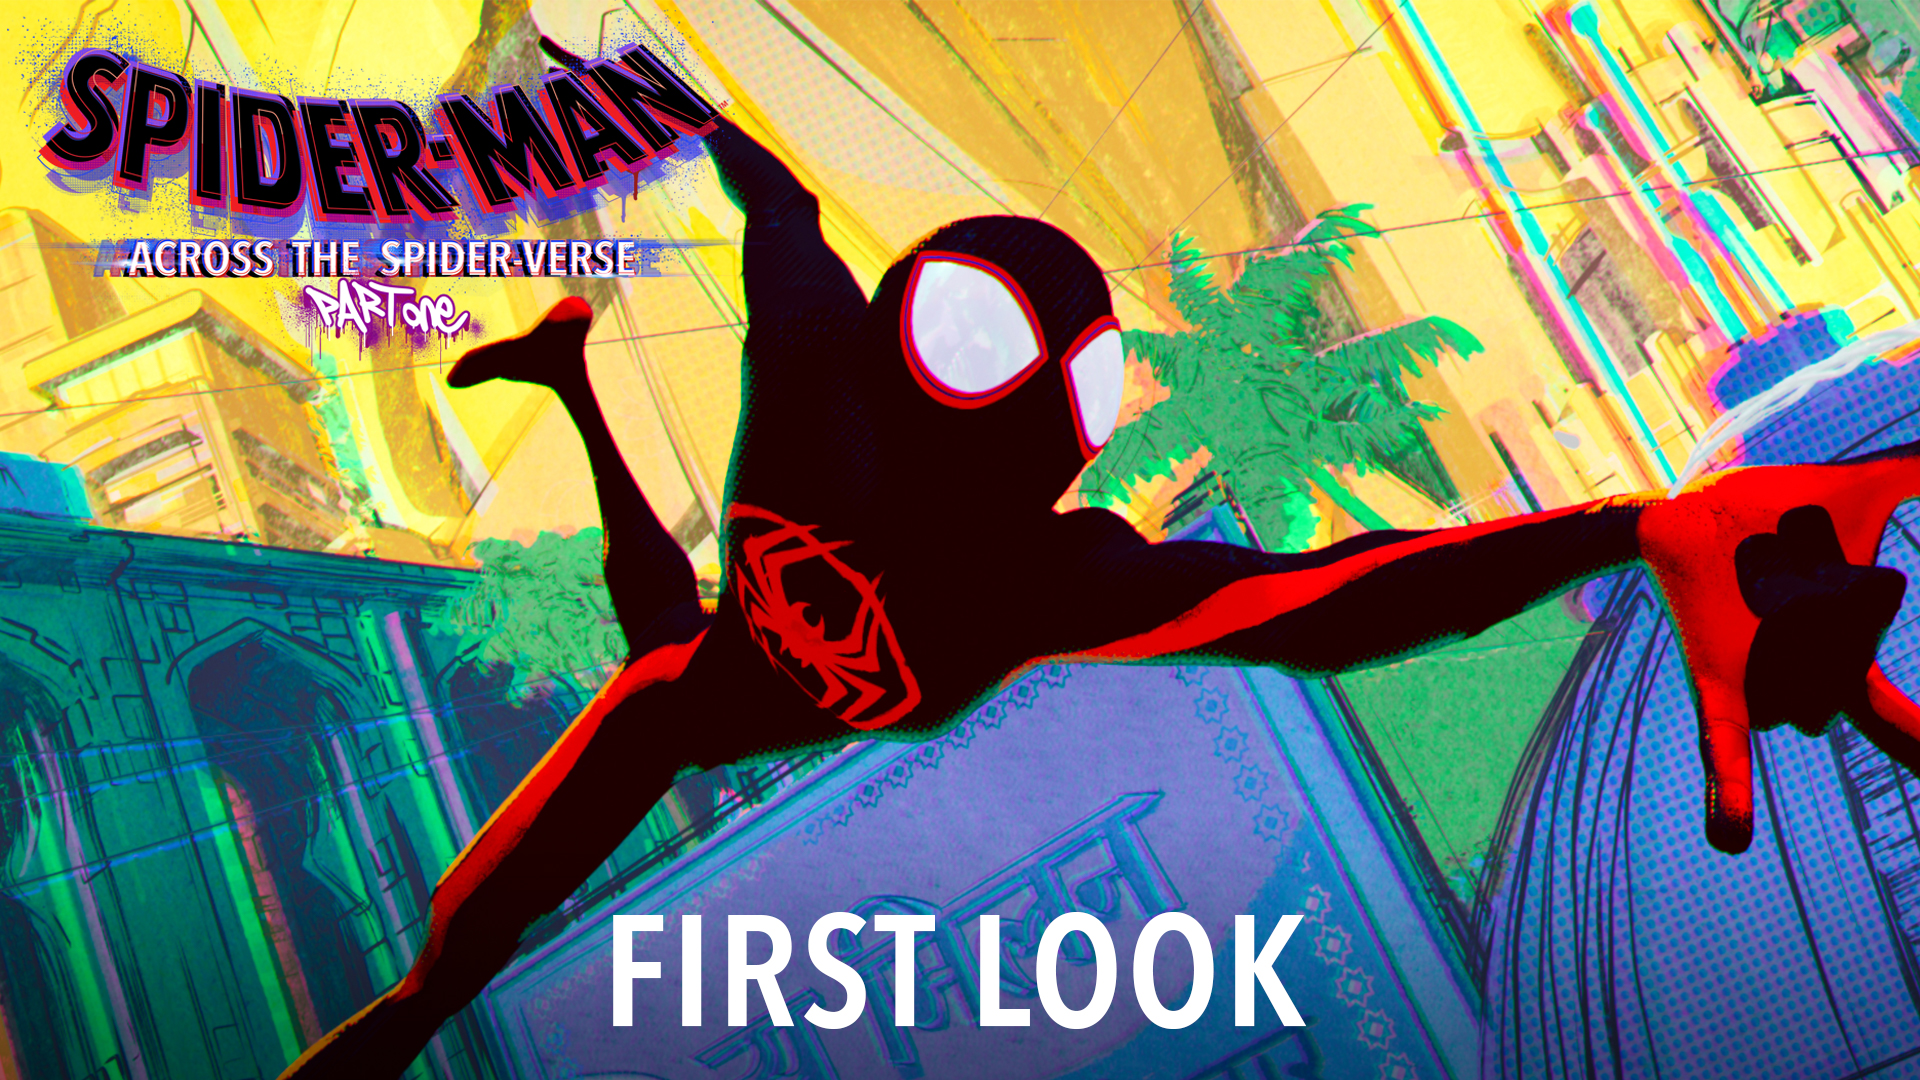 Spider Man: Across Spider-Verse - Vũ trụ mới của Người nhện hé lộ First Look khiến khán giả tò mò - ảnh 6